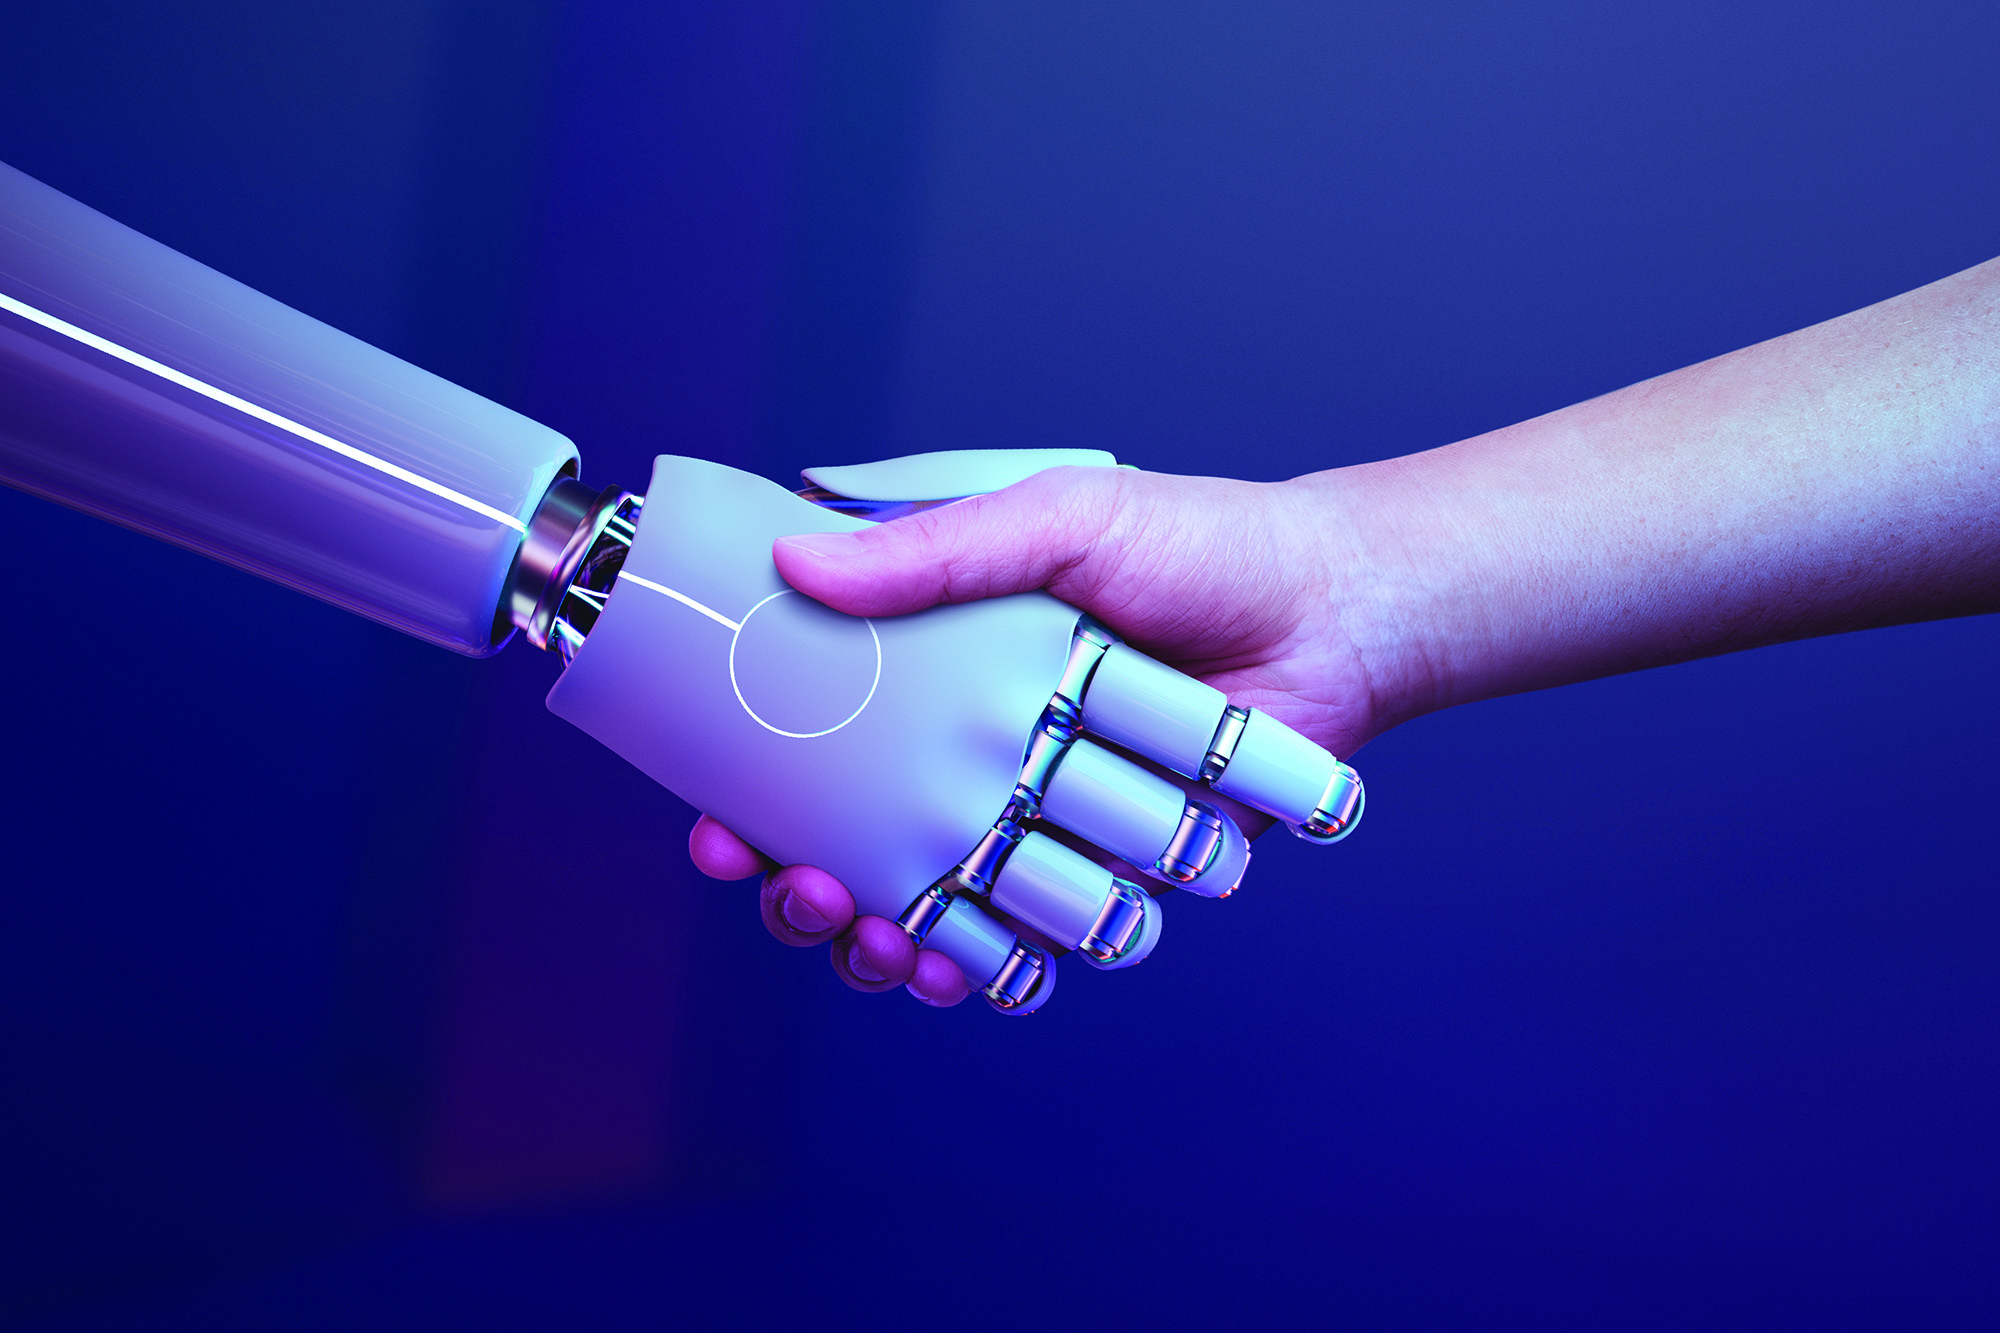 robot and human hand shake